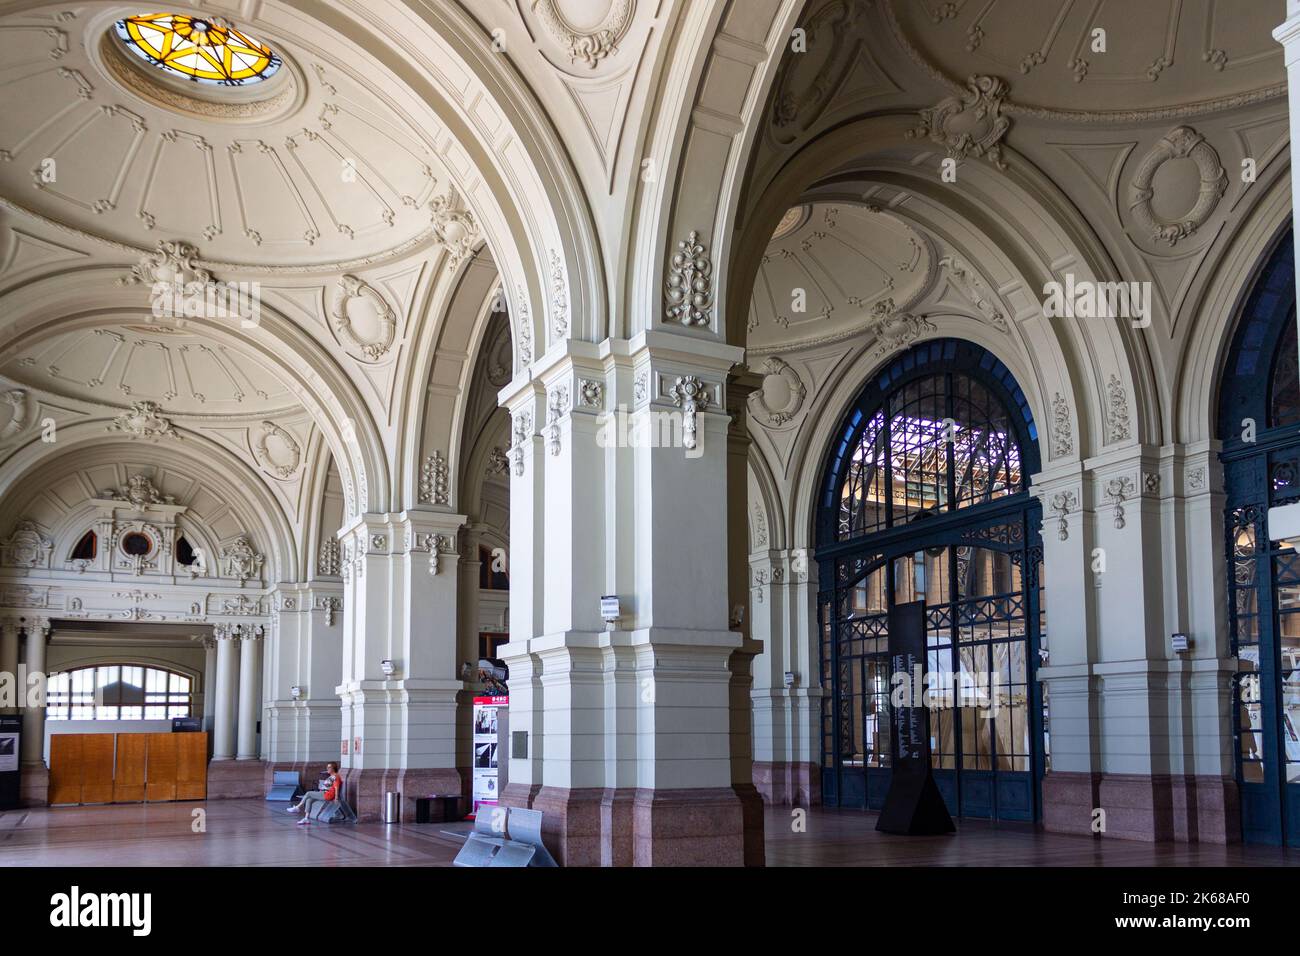 Das Innere von Estacion Mapocho, einem historischen Bahnhof in Santiago, Chile. Stockfoto